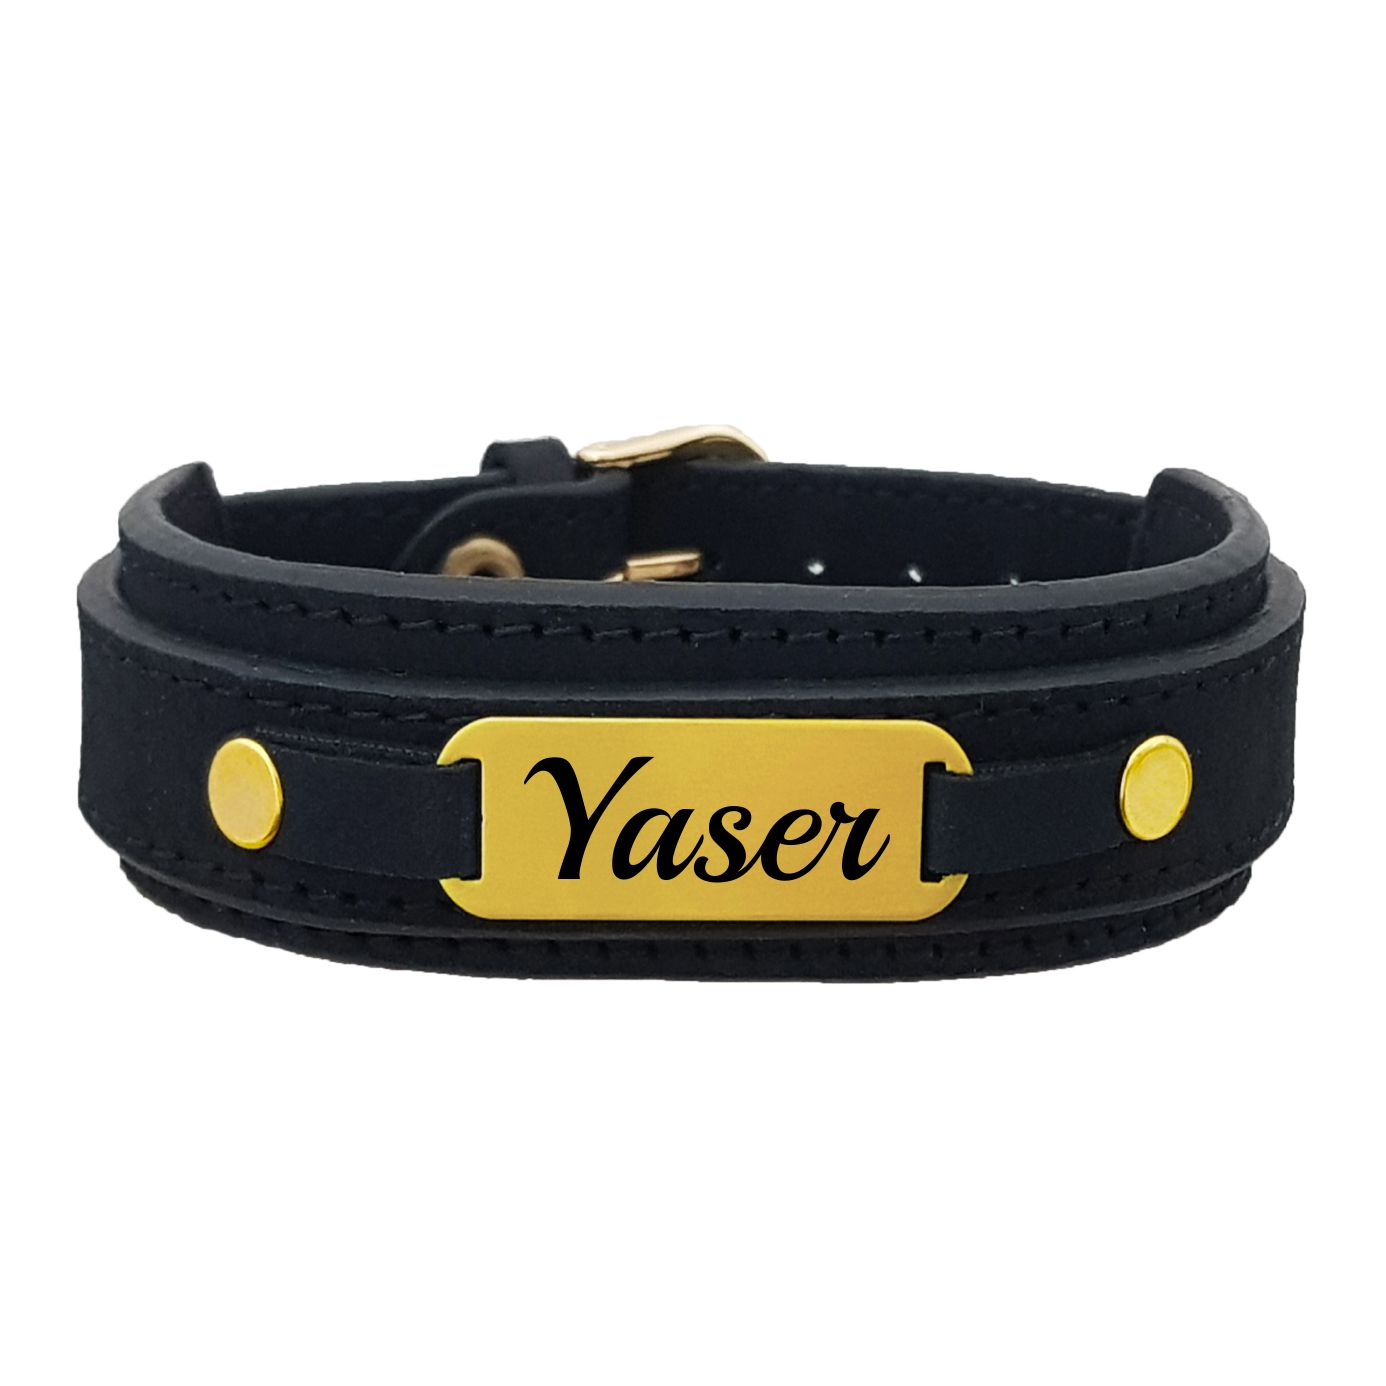 دستبند نقره مردانه لیردا مدل یاسر کد 0394 DCHNT